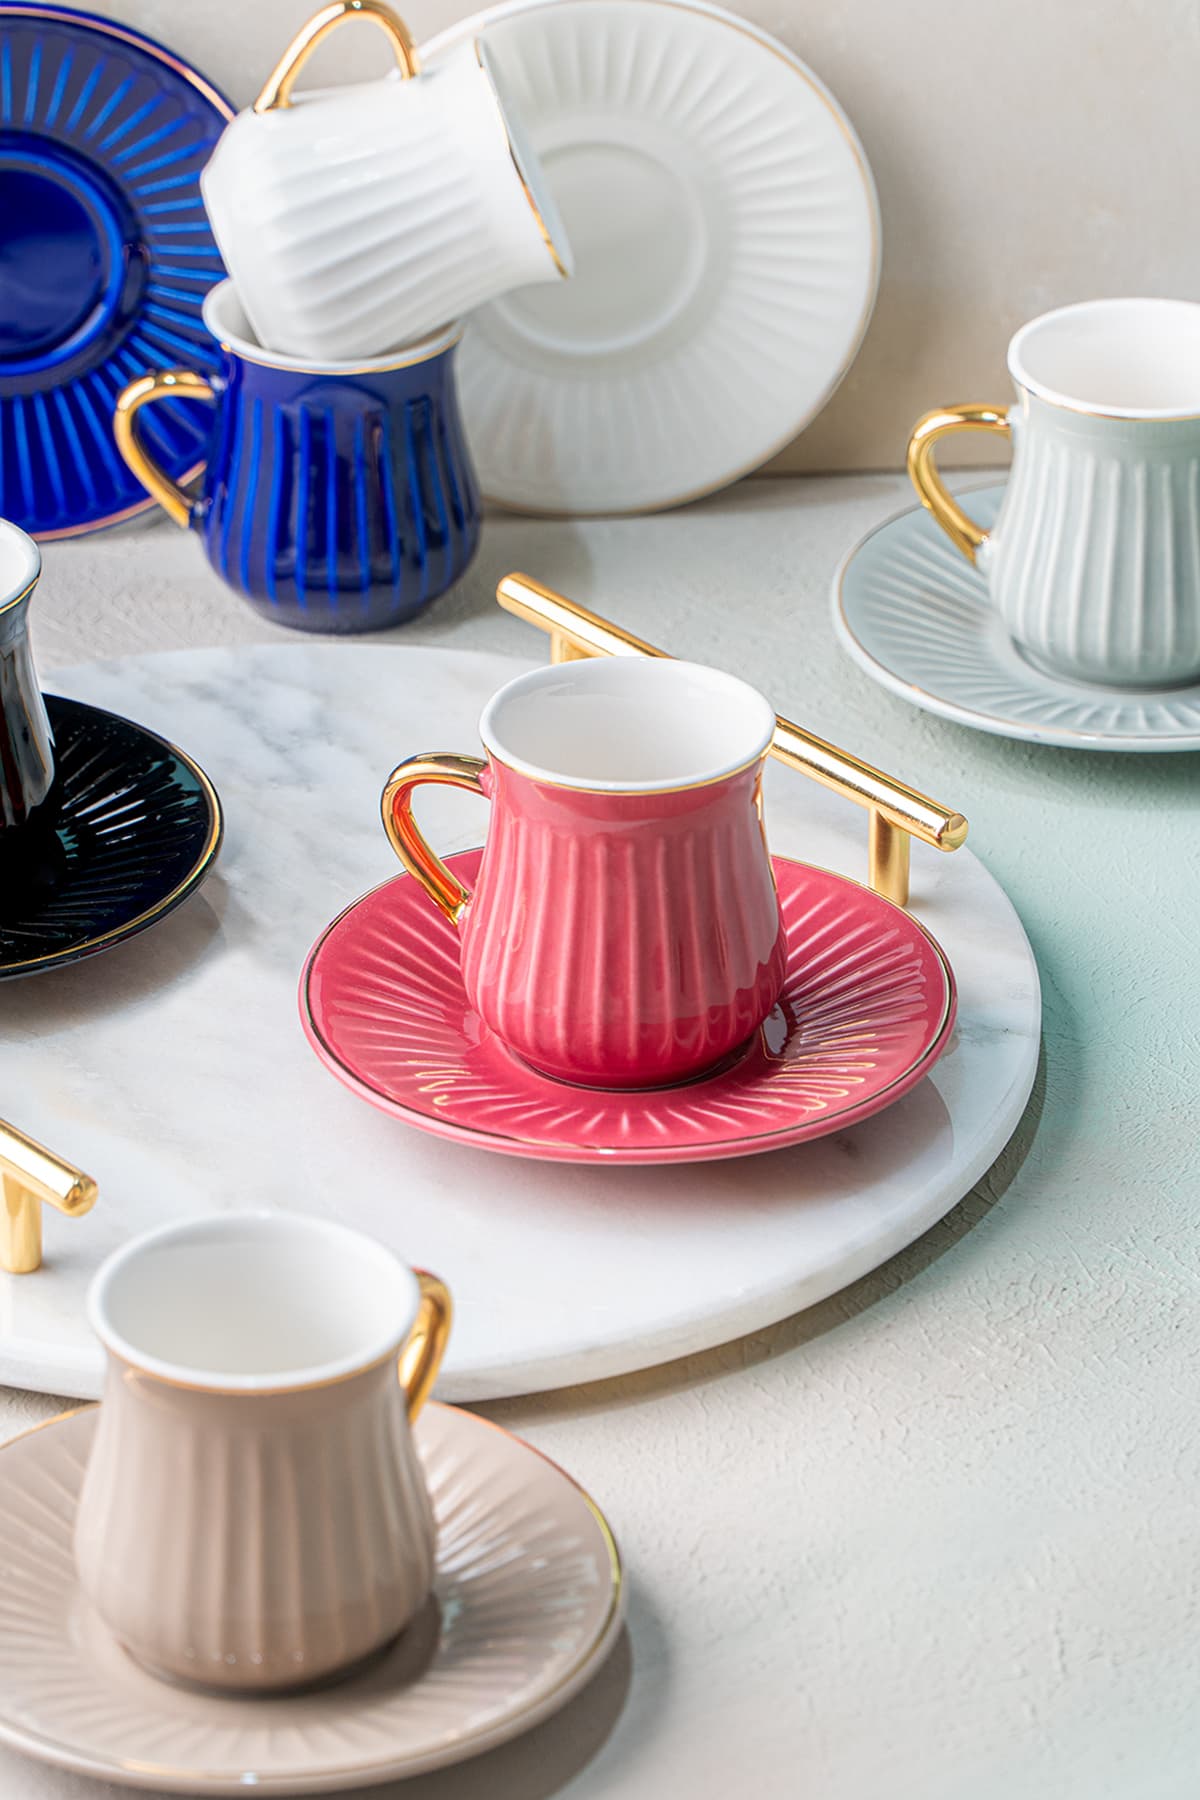 ACAR Lena Gold Yaldız Renkli 6 Kişilik Porselen Kahve Fincanı Takımı